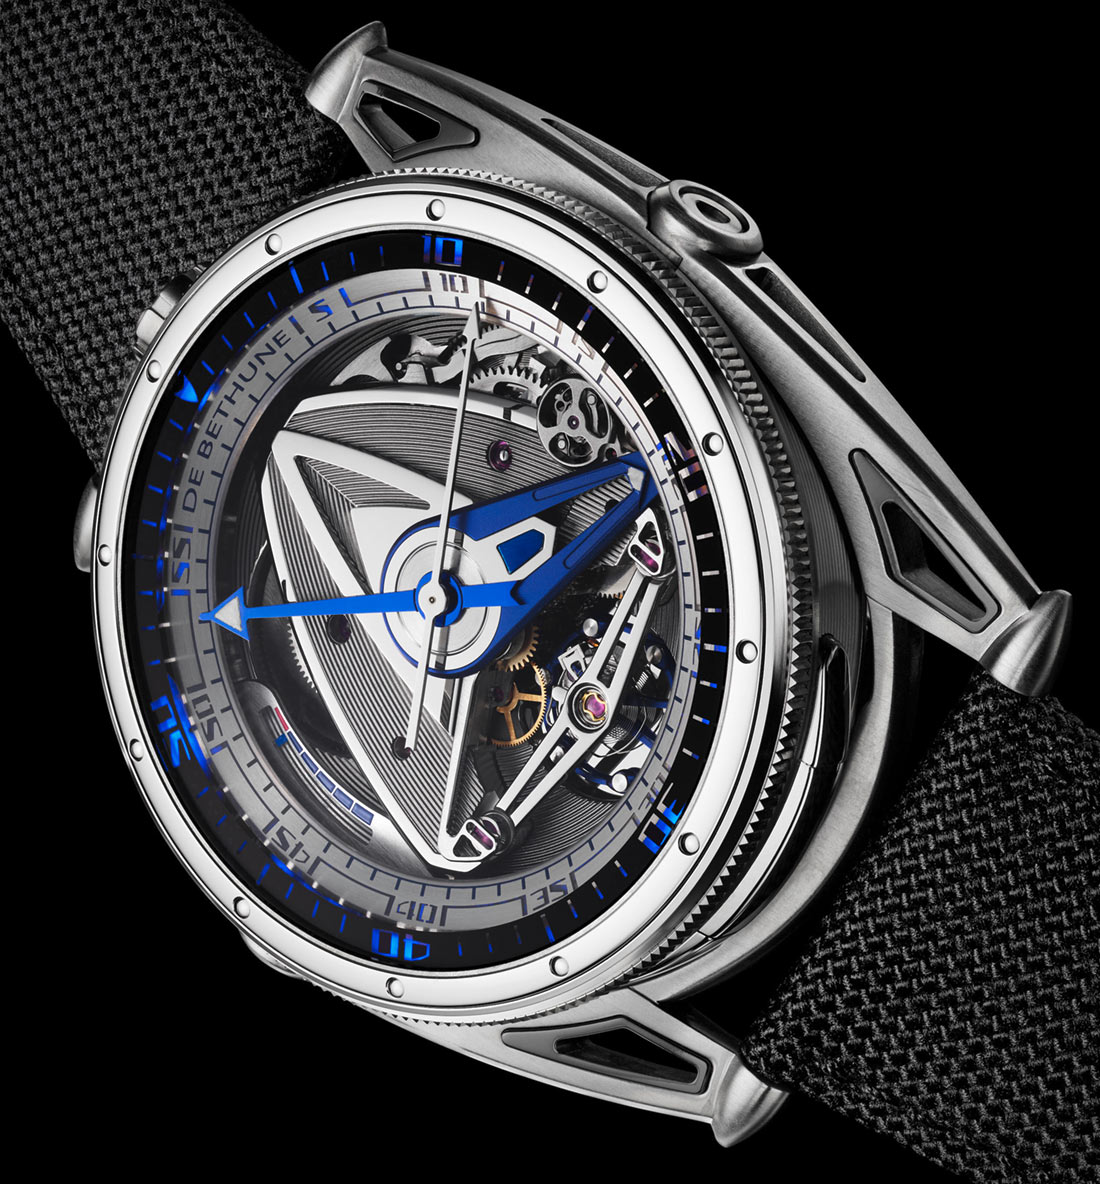 De Bethune DB28GS Grand Bleu sport watch